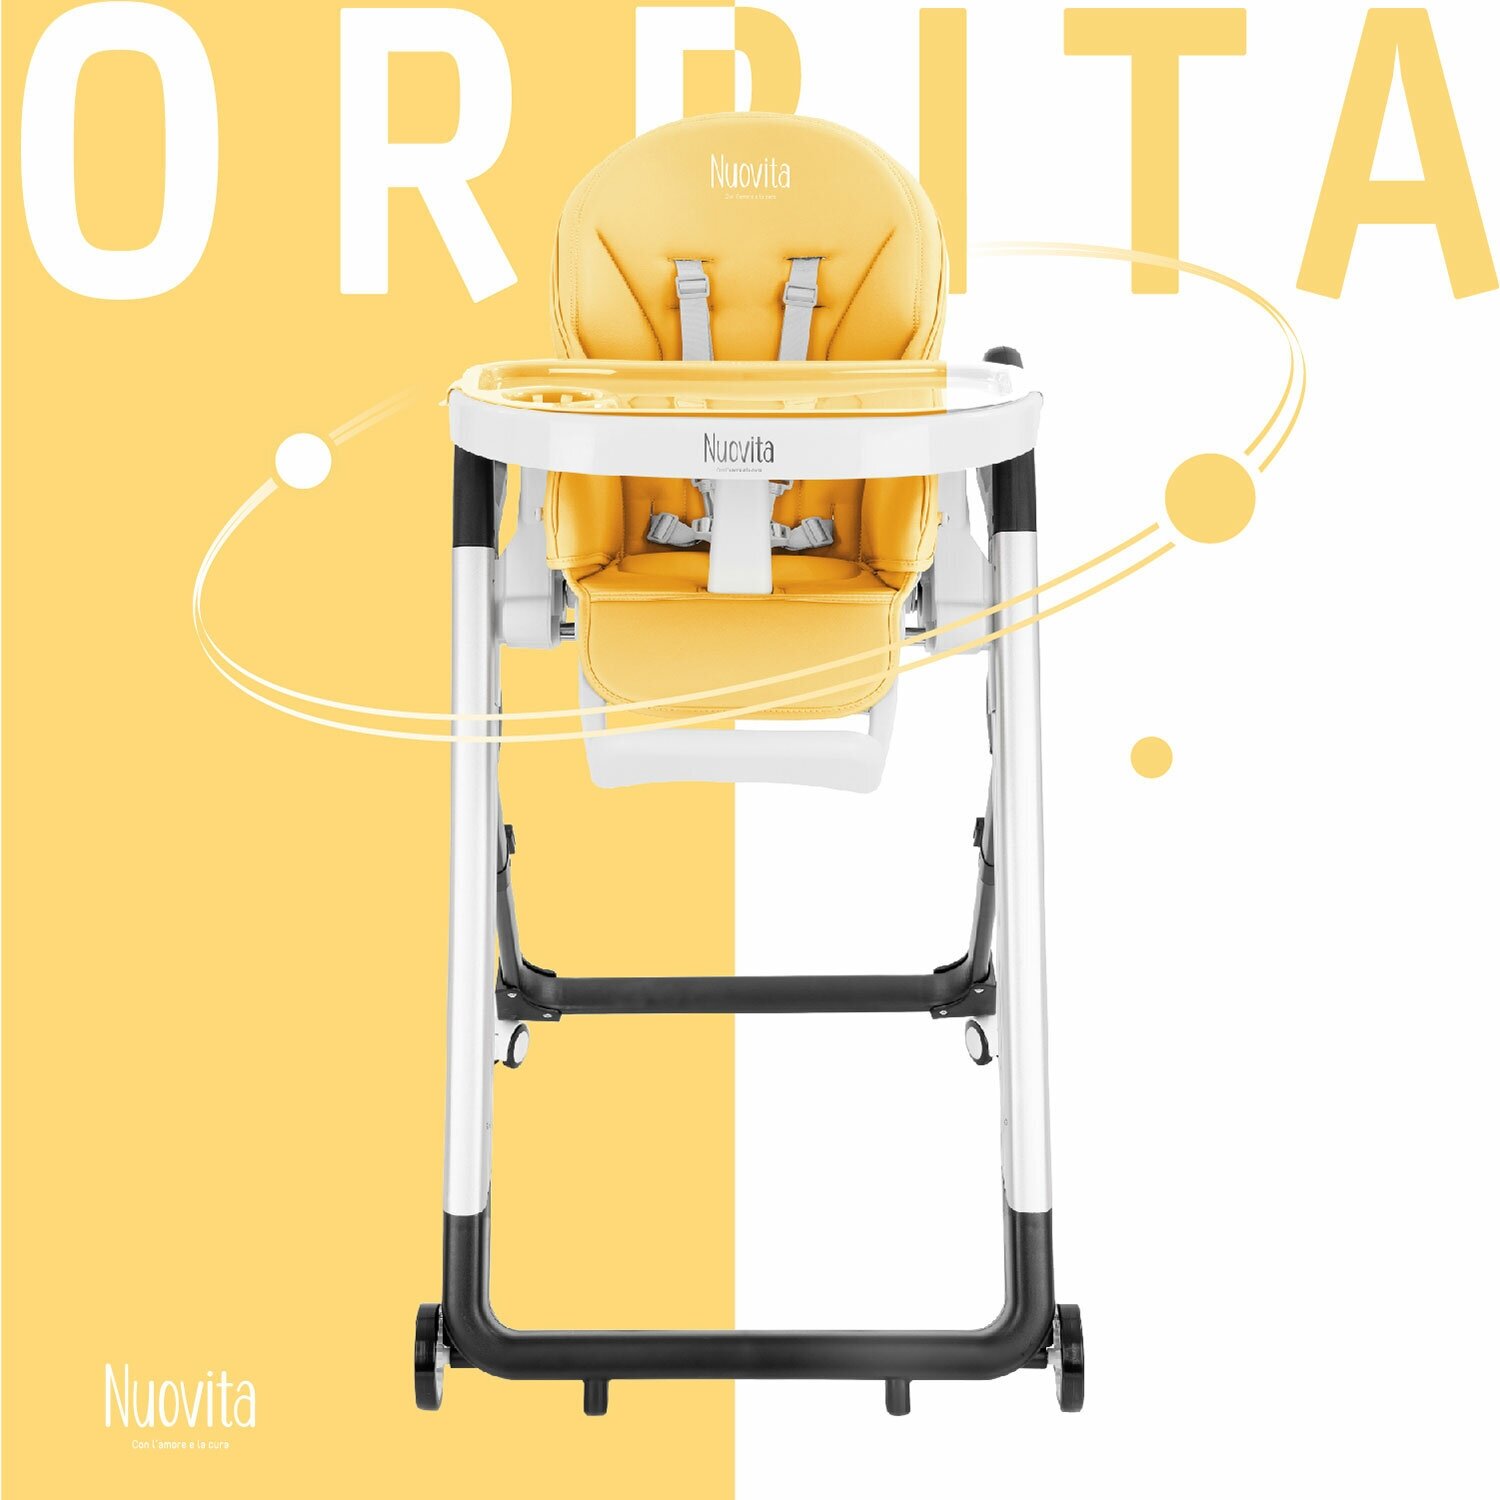 Стульчик для кормления Nuovita Orbita (Giallo, Argenteo/Желтый, Серебристый)